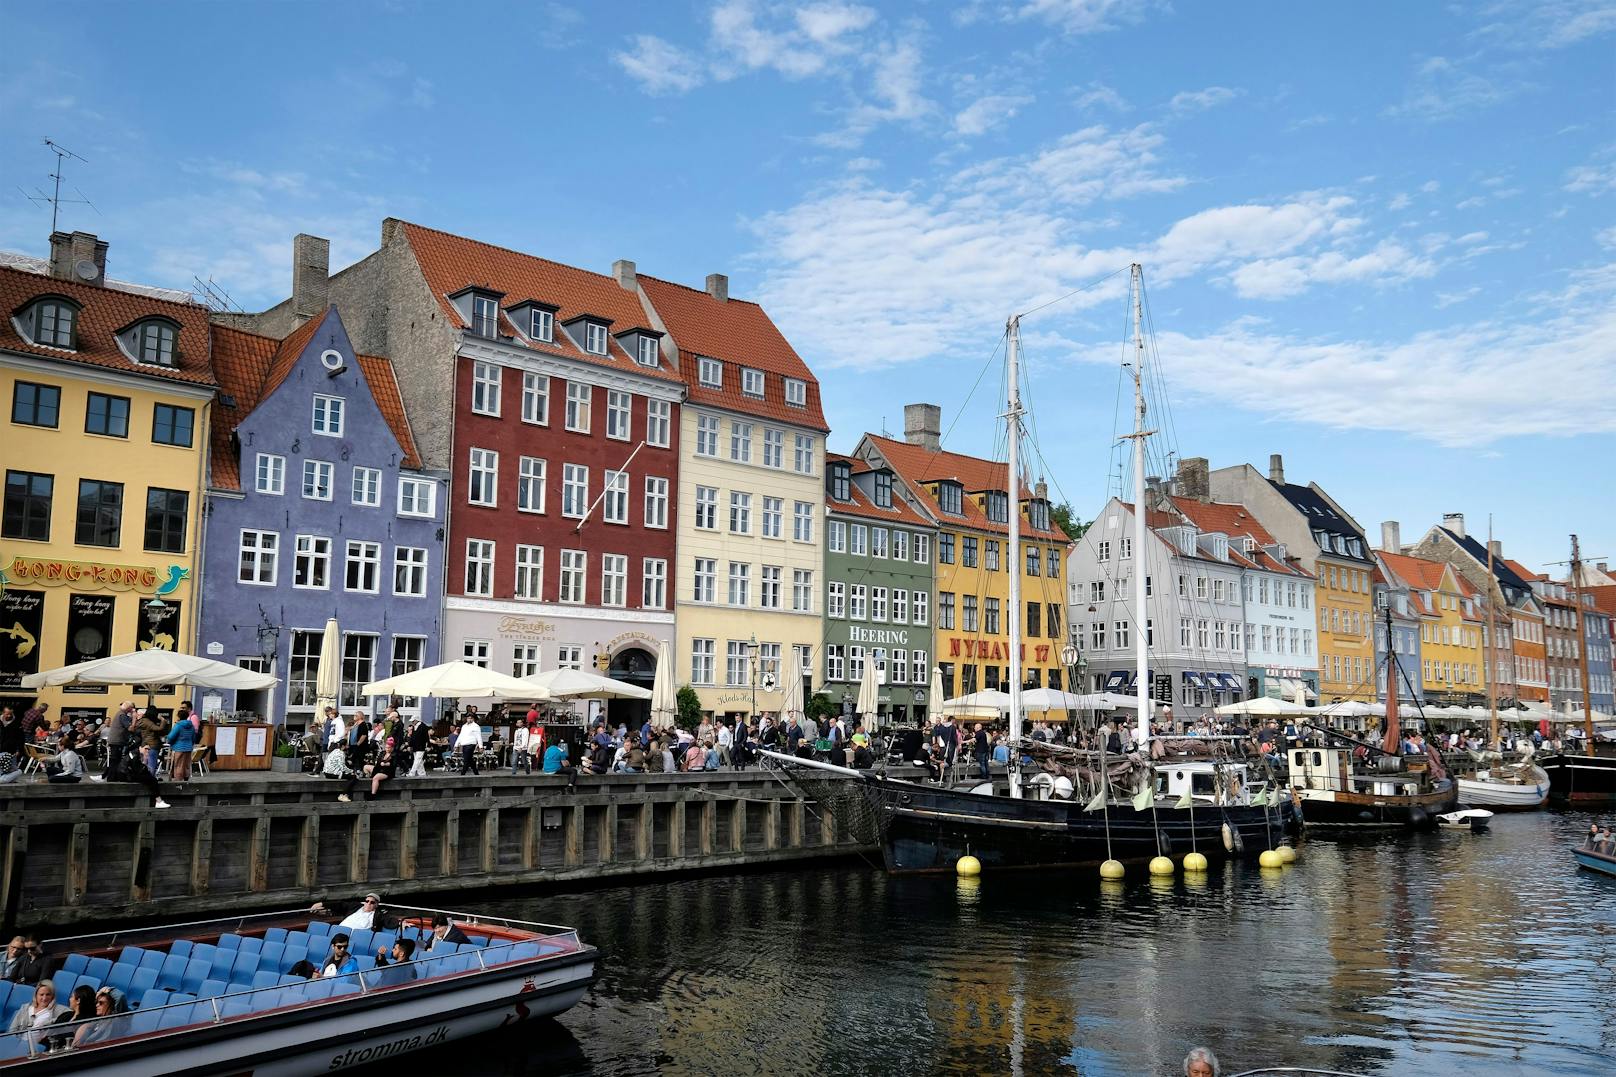 Dänemark hebt in weniger als 2 Wochen die Corona-Beschränkungen auf.